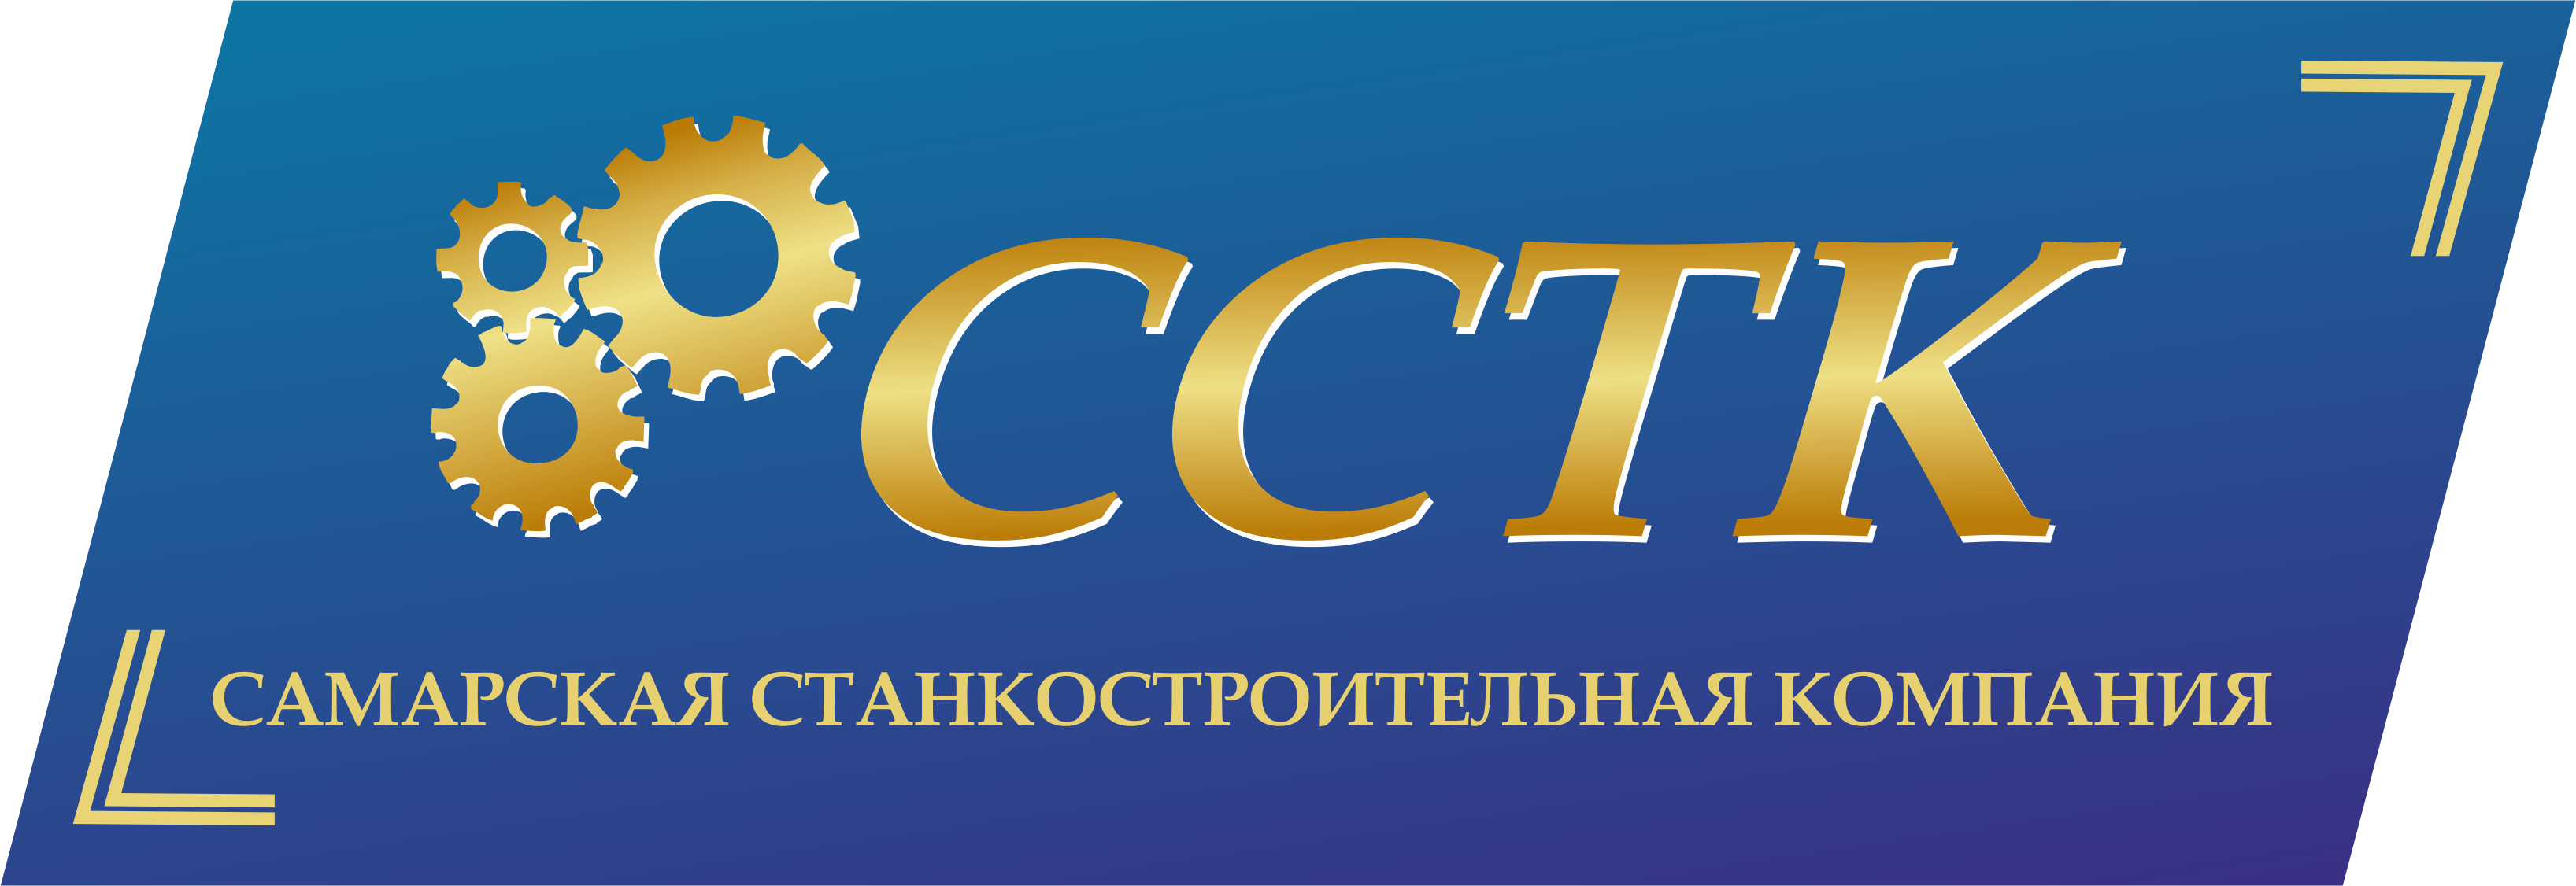 Логотип компании ООО ССТК